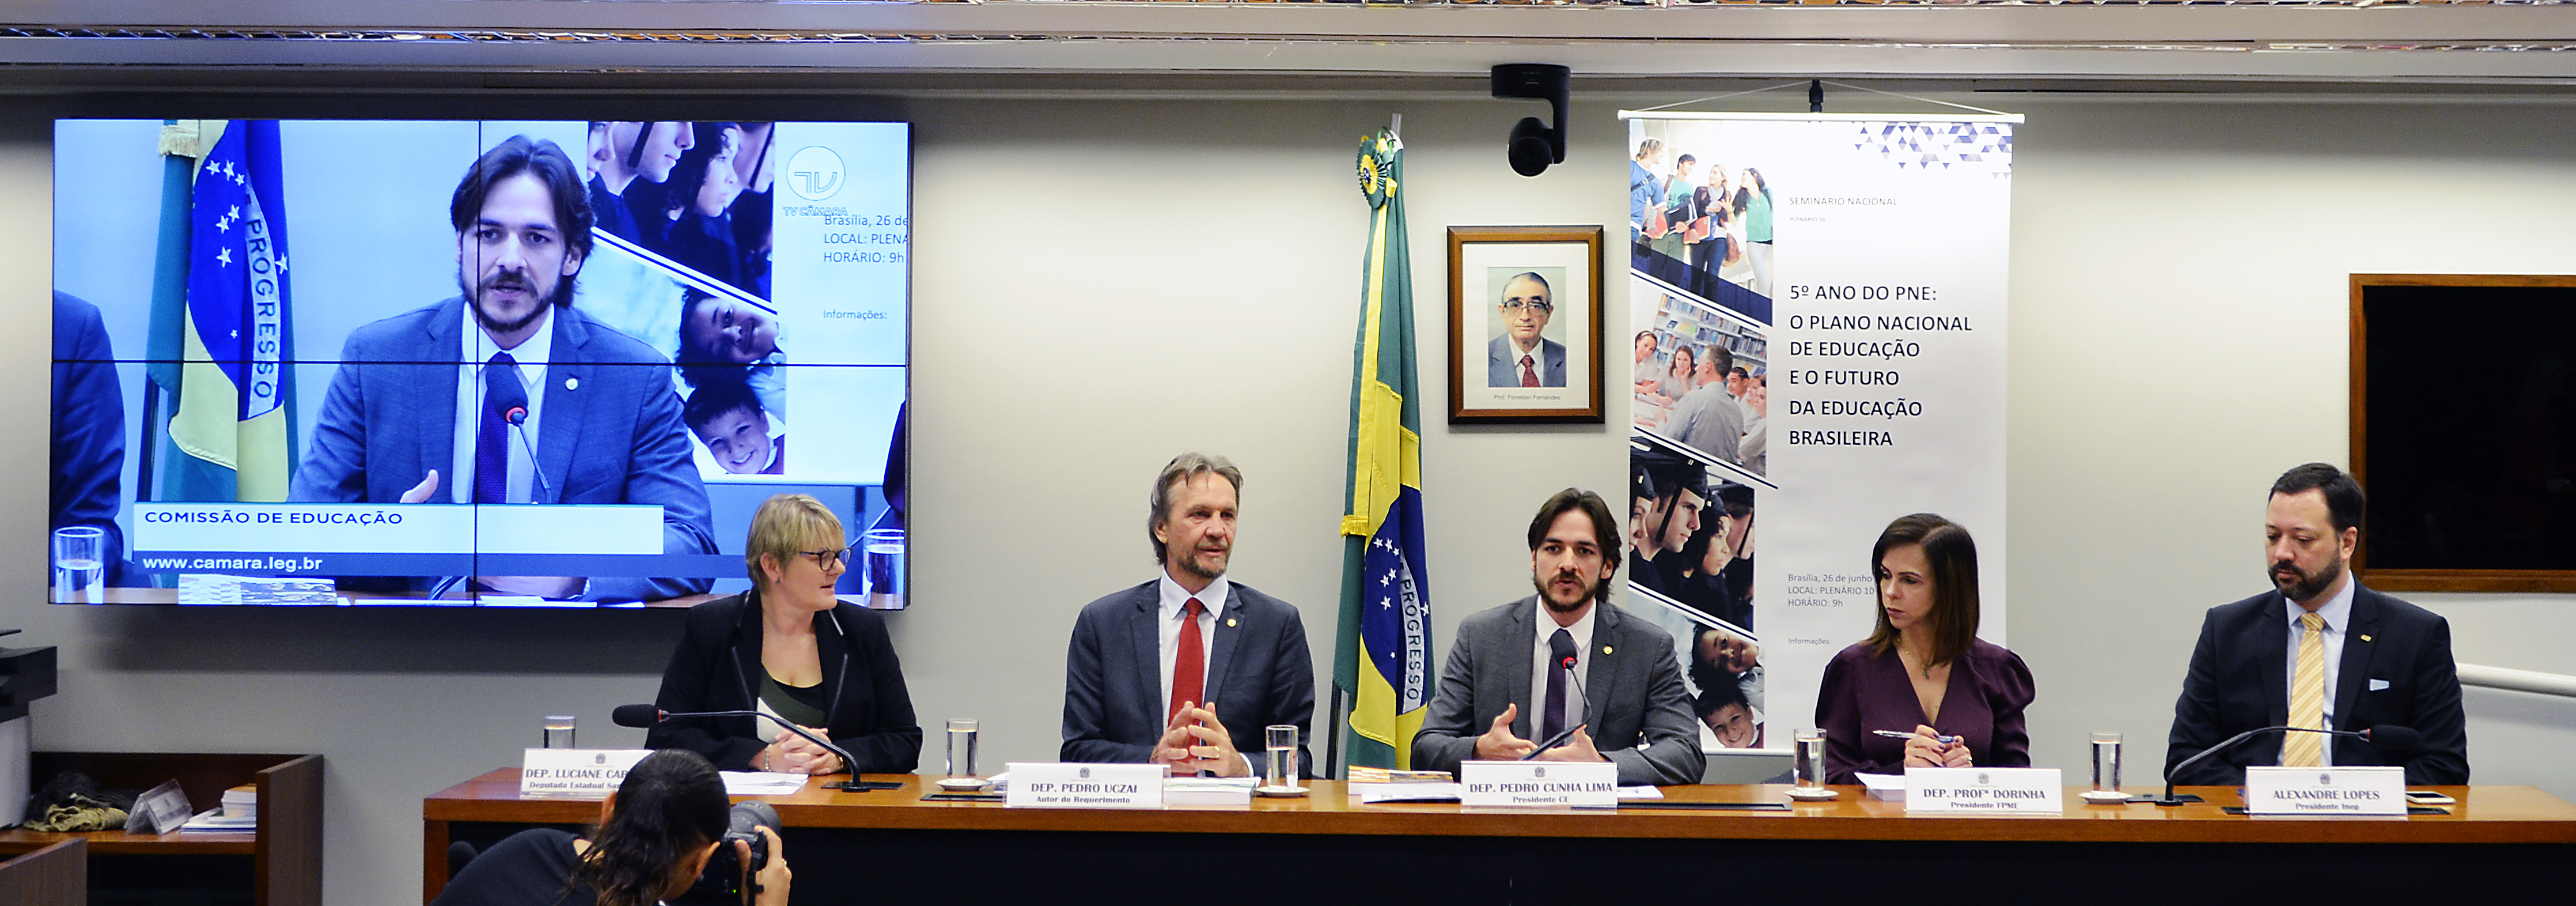 Seminário Nacional 5º Ano do PNE: o Plano Nacional de Educação e o Futuro da Educação Brasileira.